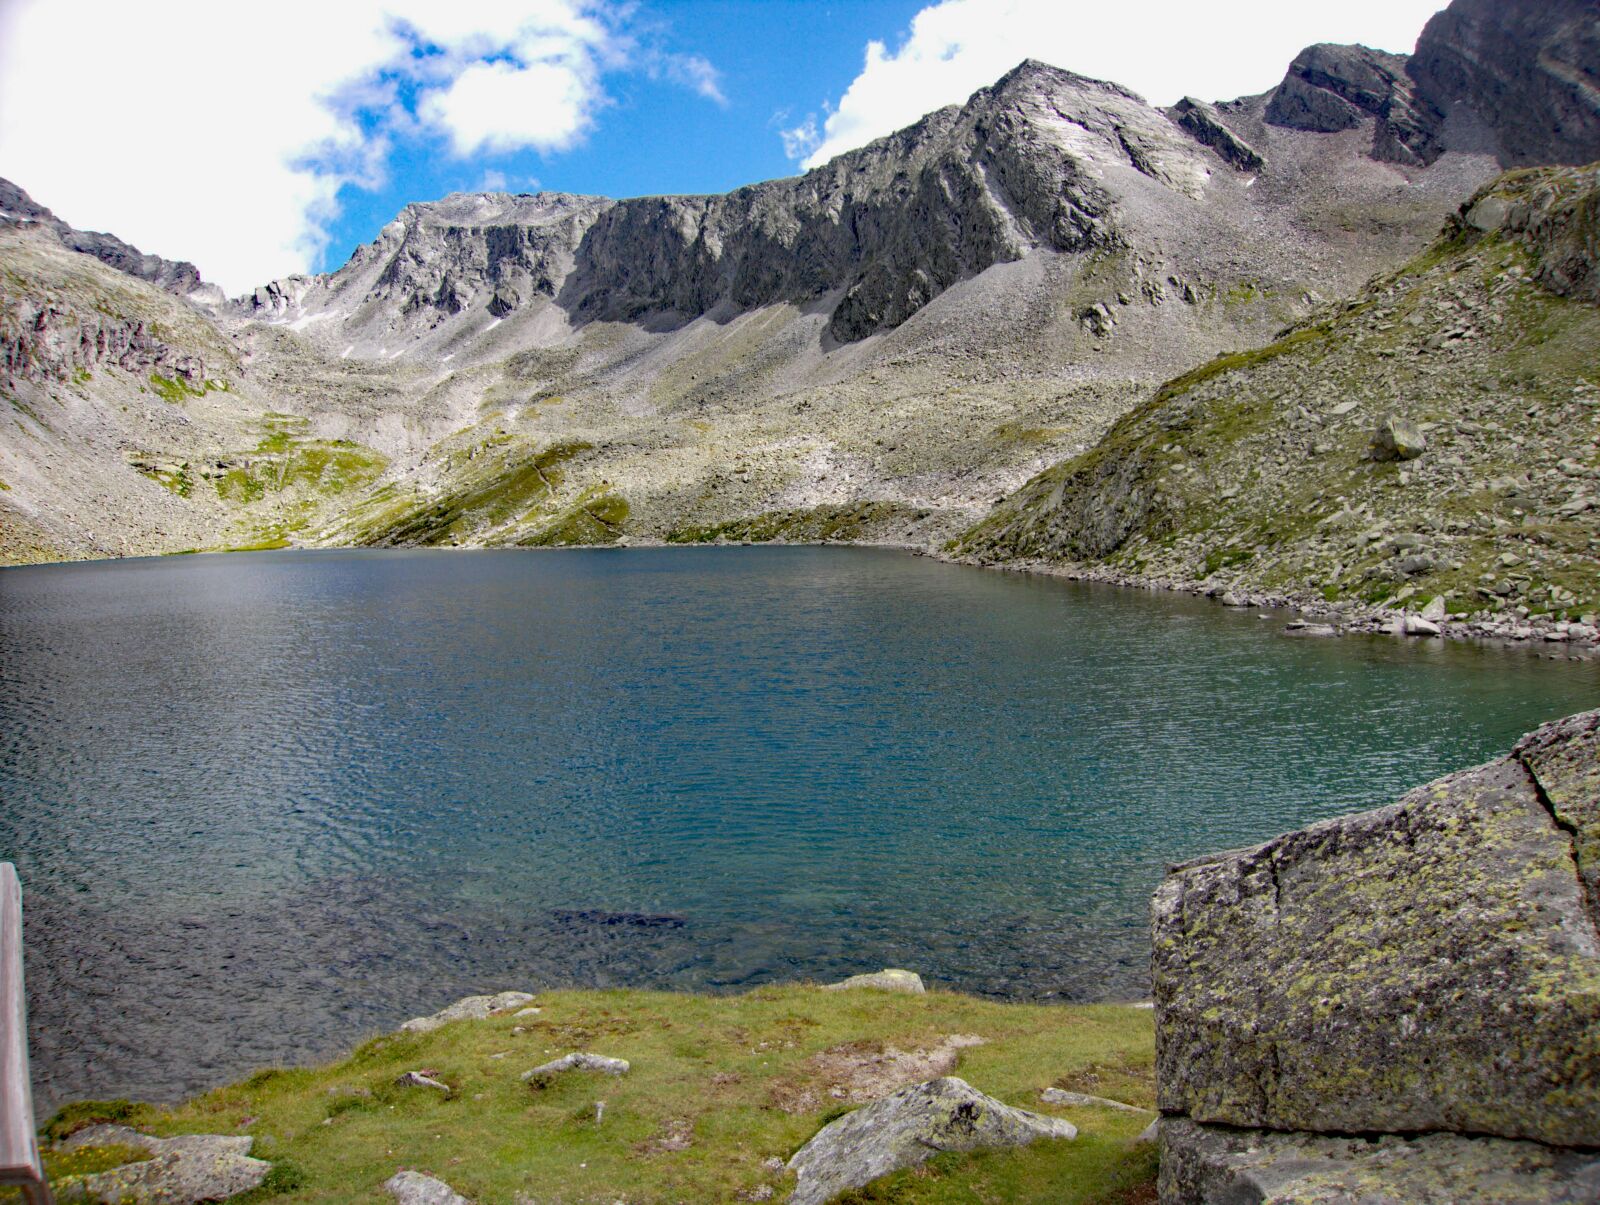 Canon PowerShot S110 sample photo. Mountains, lake, dolomites photography